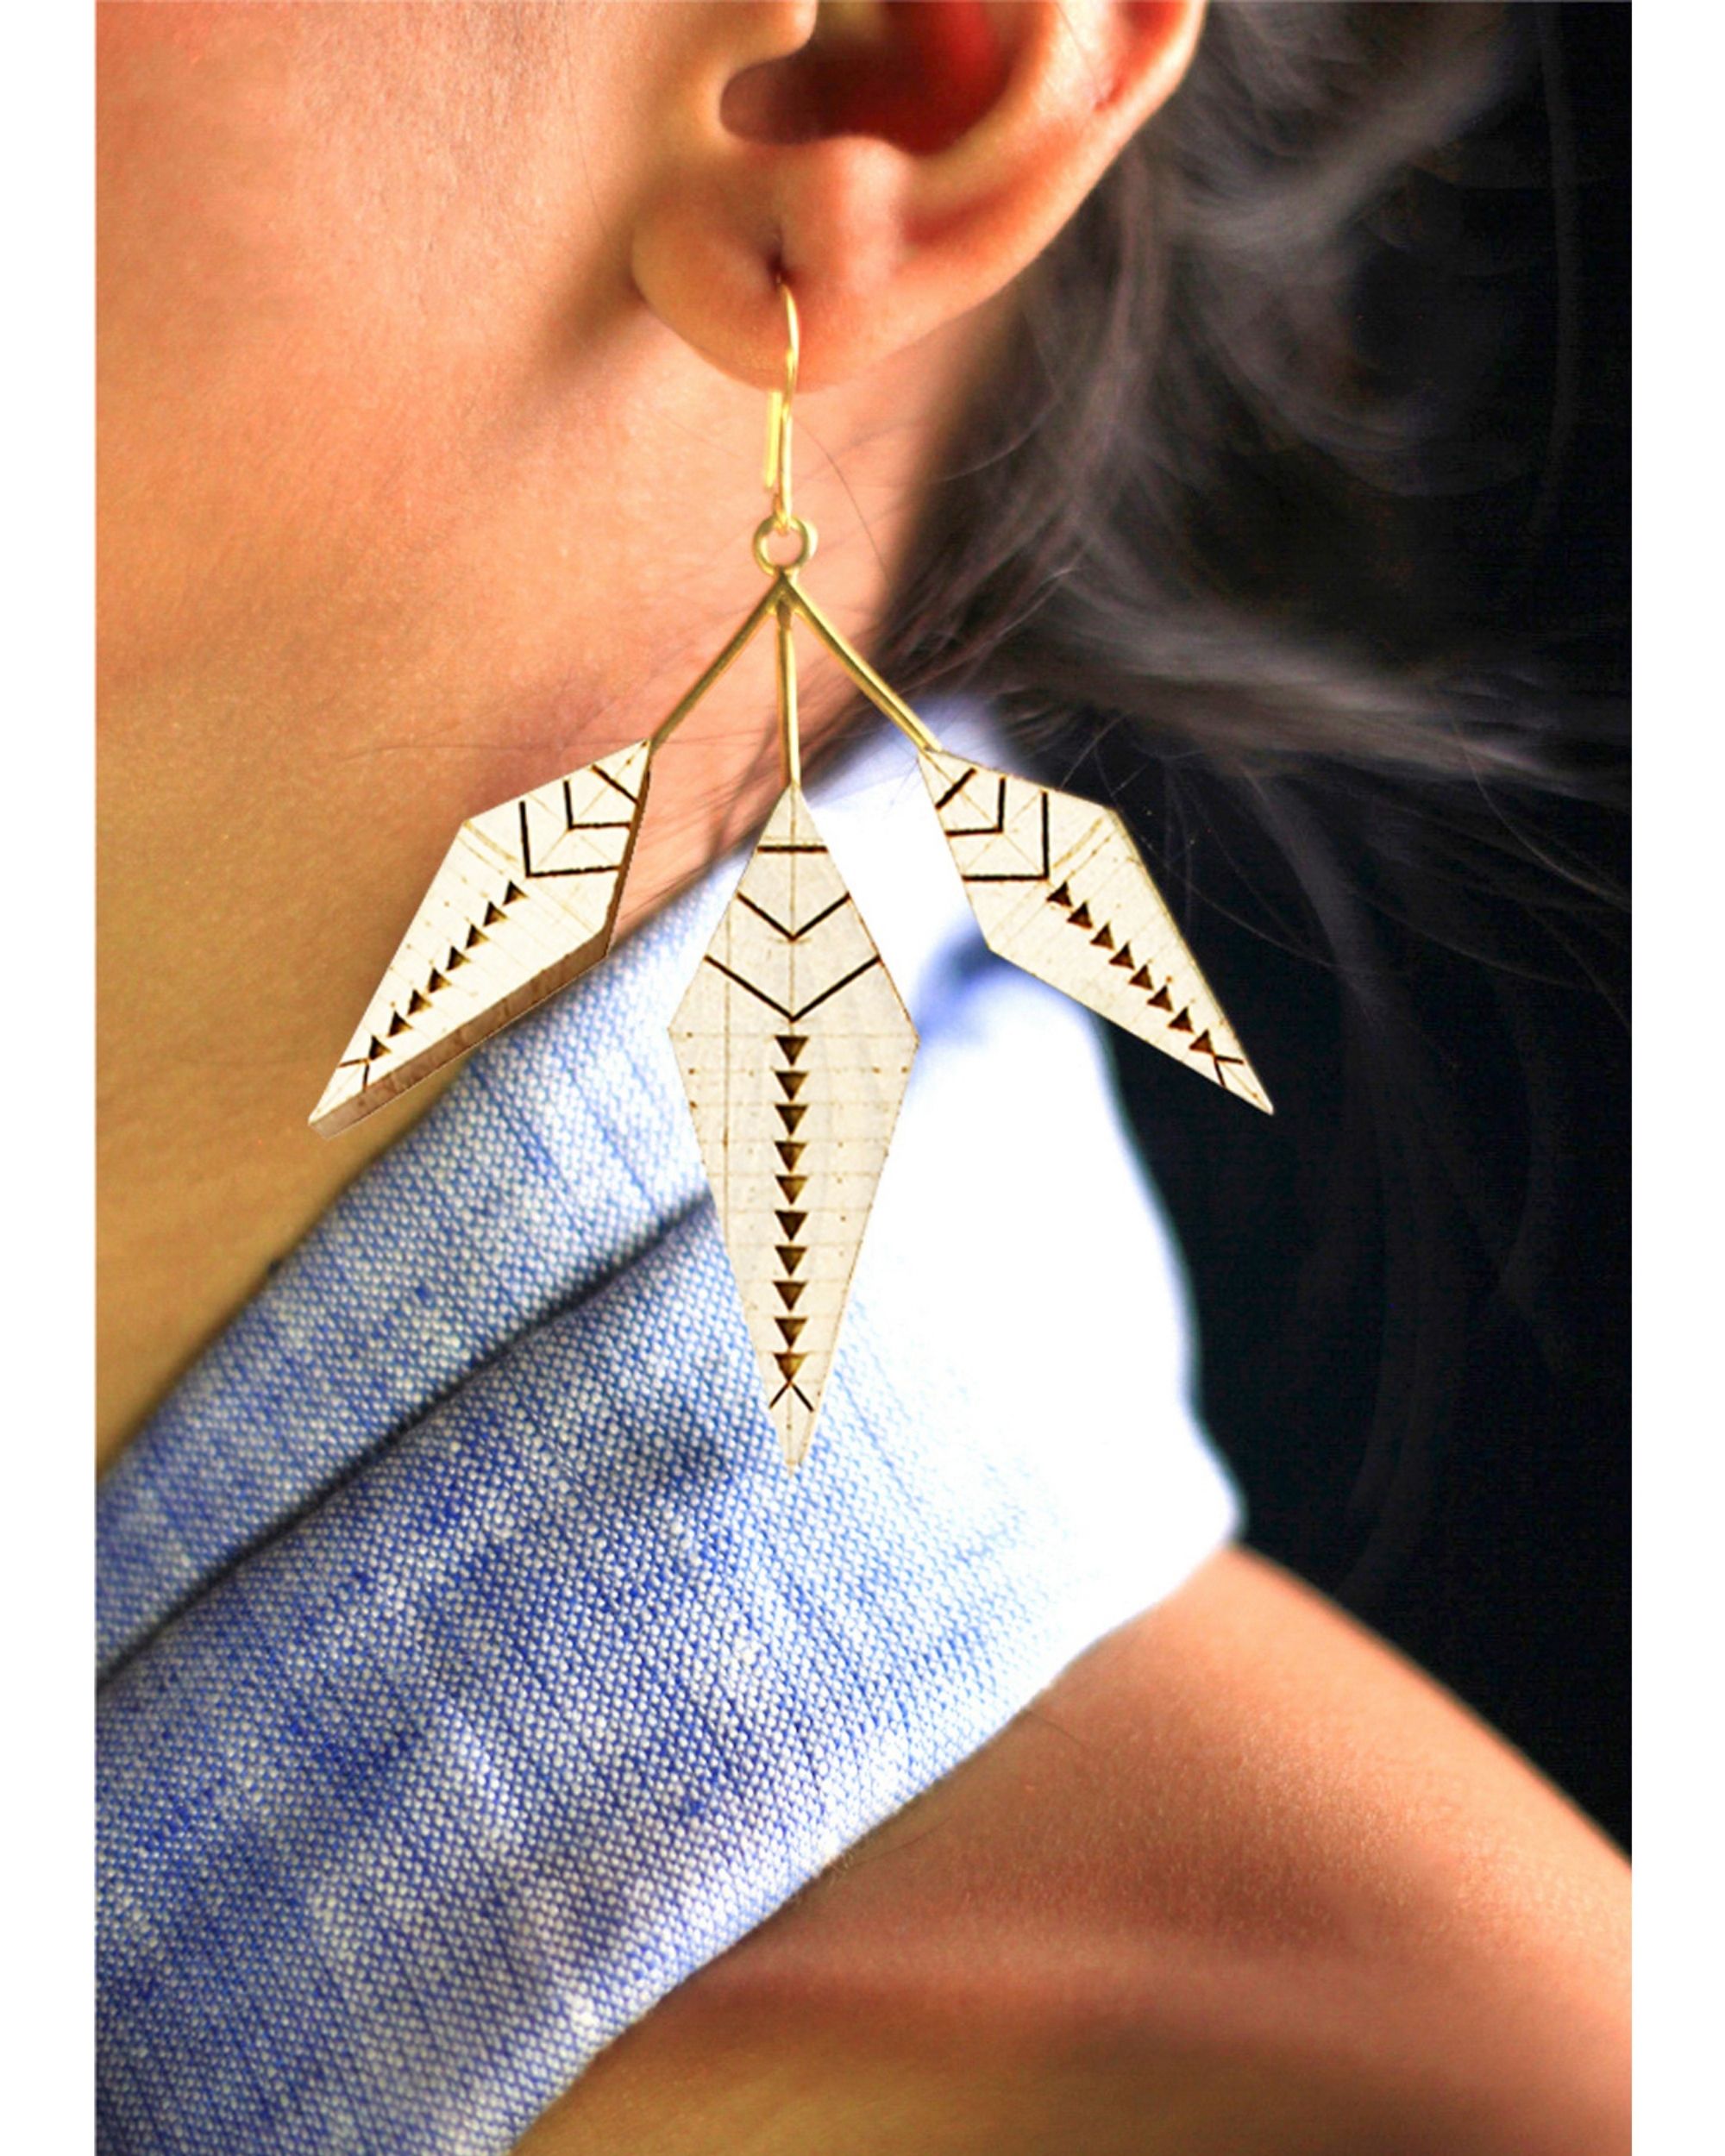 Trapezoid fish hook earrings by Satat